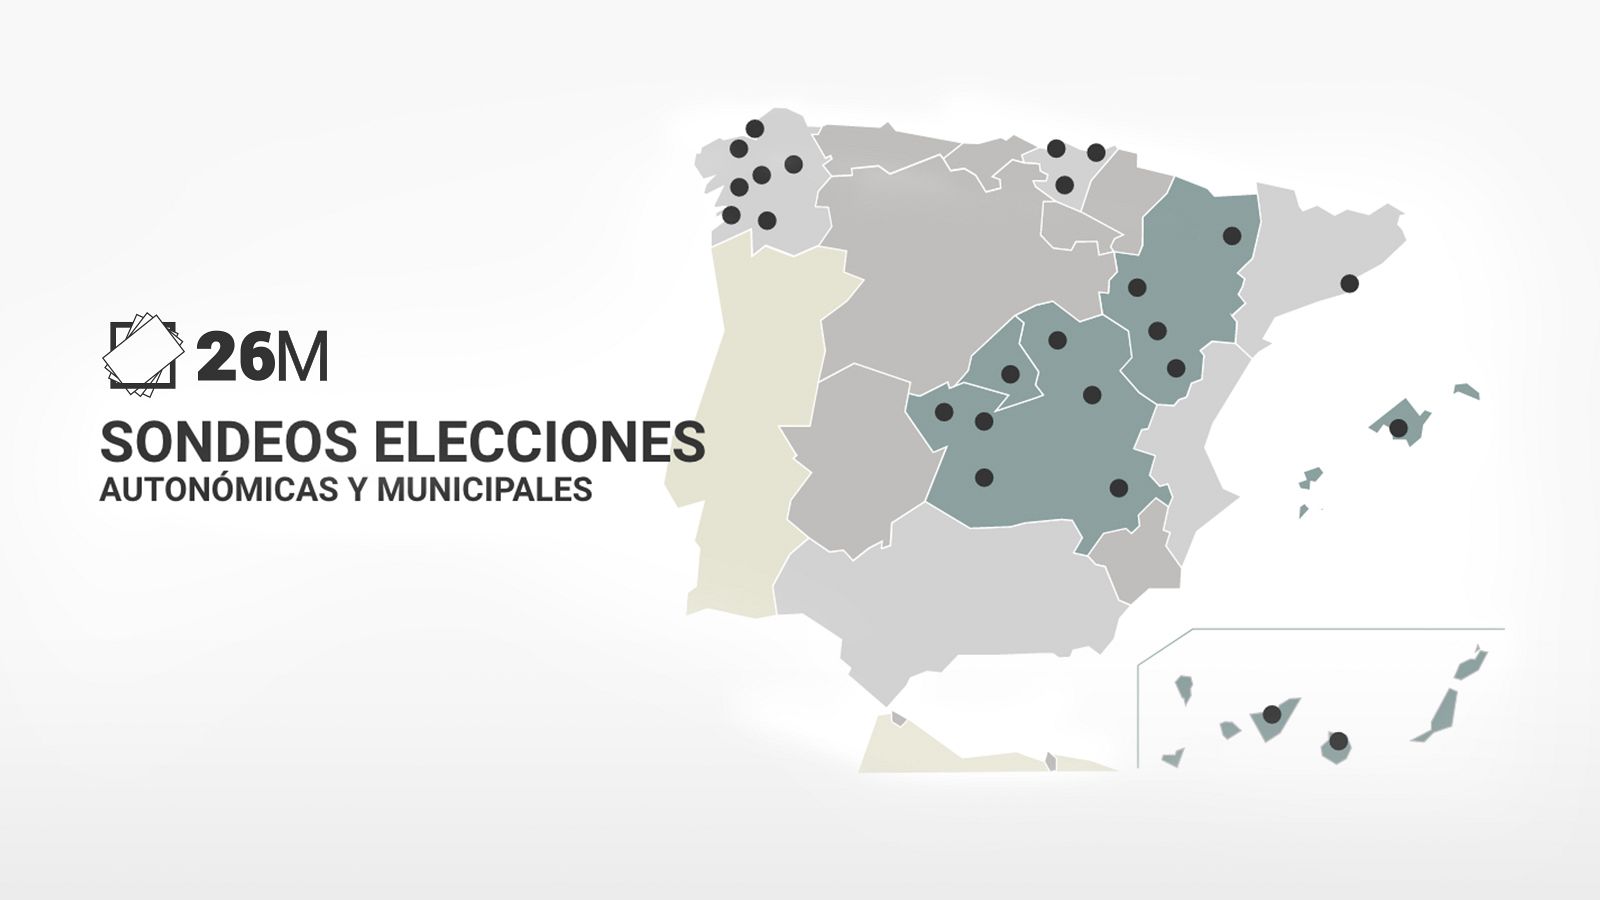 El PSOE mantiene el gobierno en Castilla-La Mancha, Baleares y Aragón y lo ganaría en la Comunidad de Madrid, según sondeos